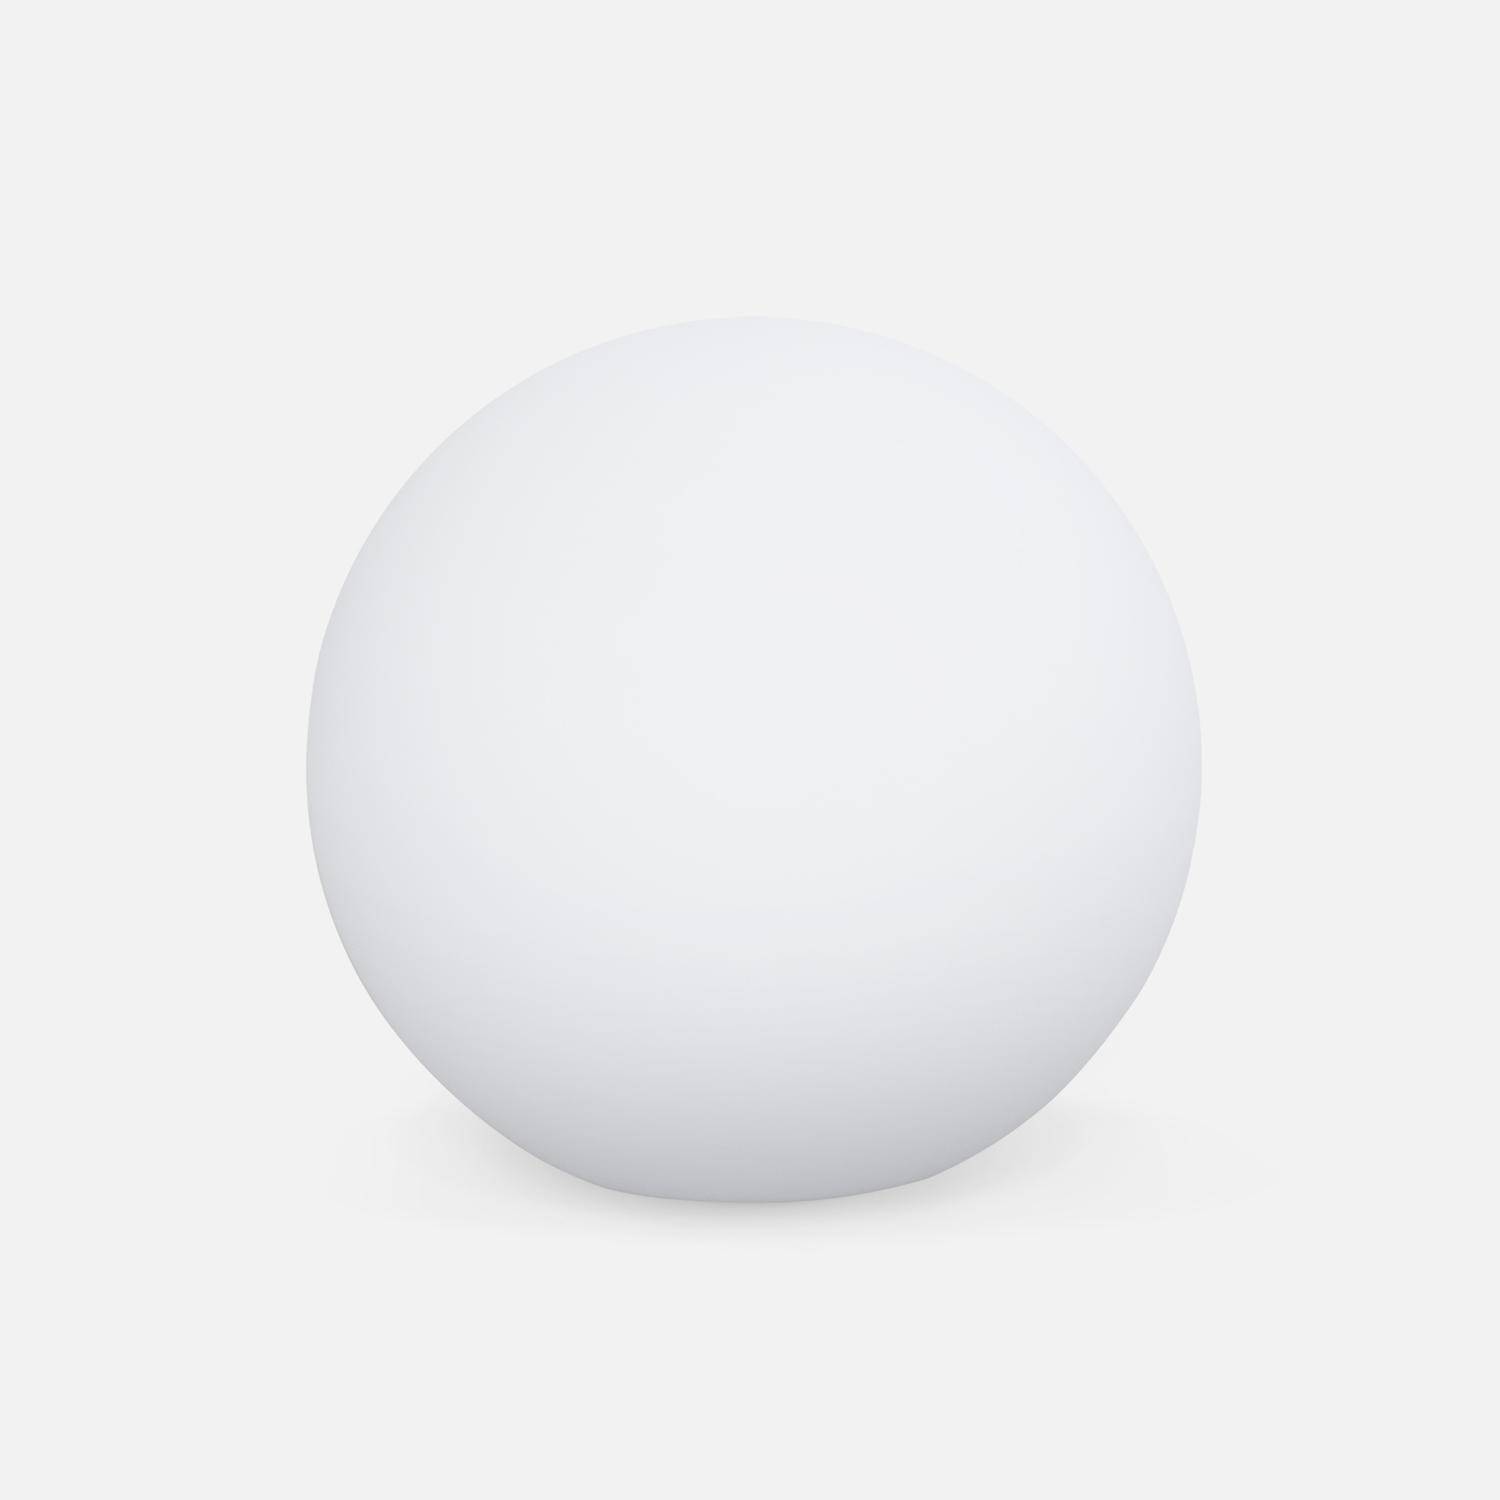 LED Bollamp 30cm – Decoratieve lichtbol, Ø30cm, warm wit, afstandsbediening Photo2